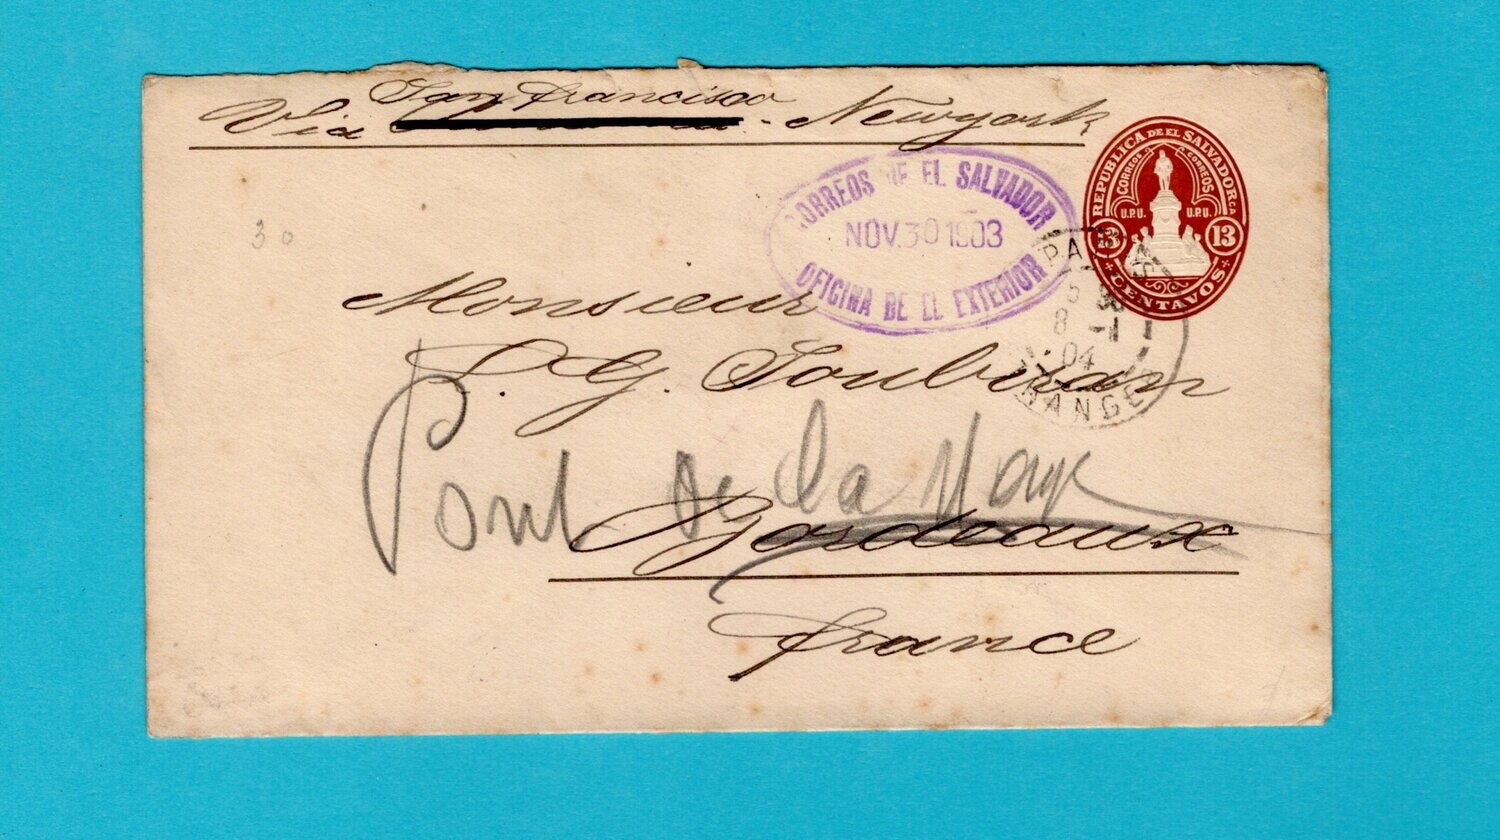 EL SALVADOR postal envelop 1903 San Salvador to France